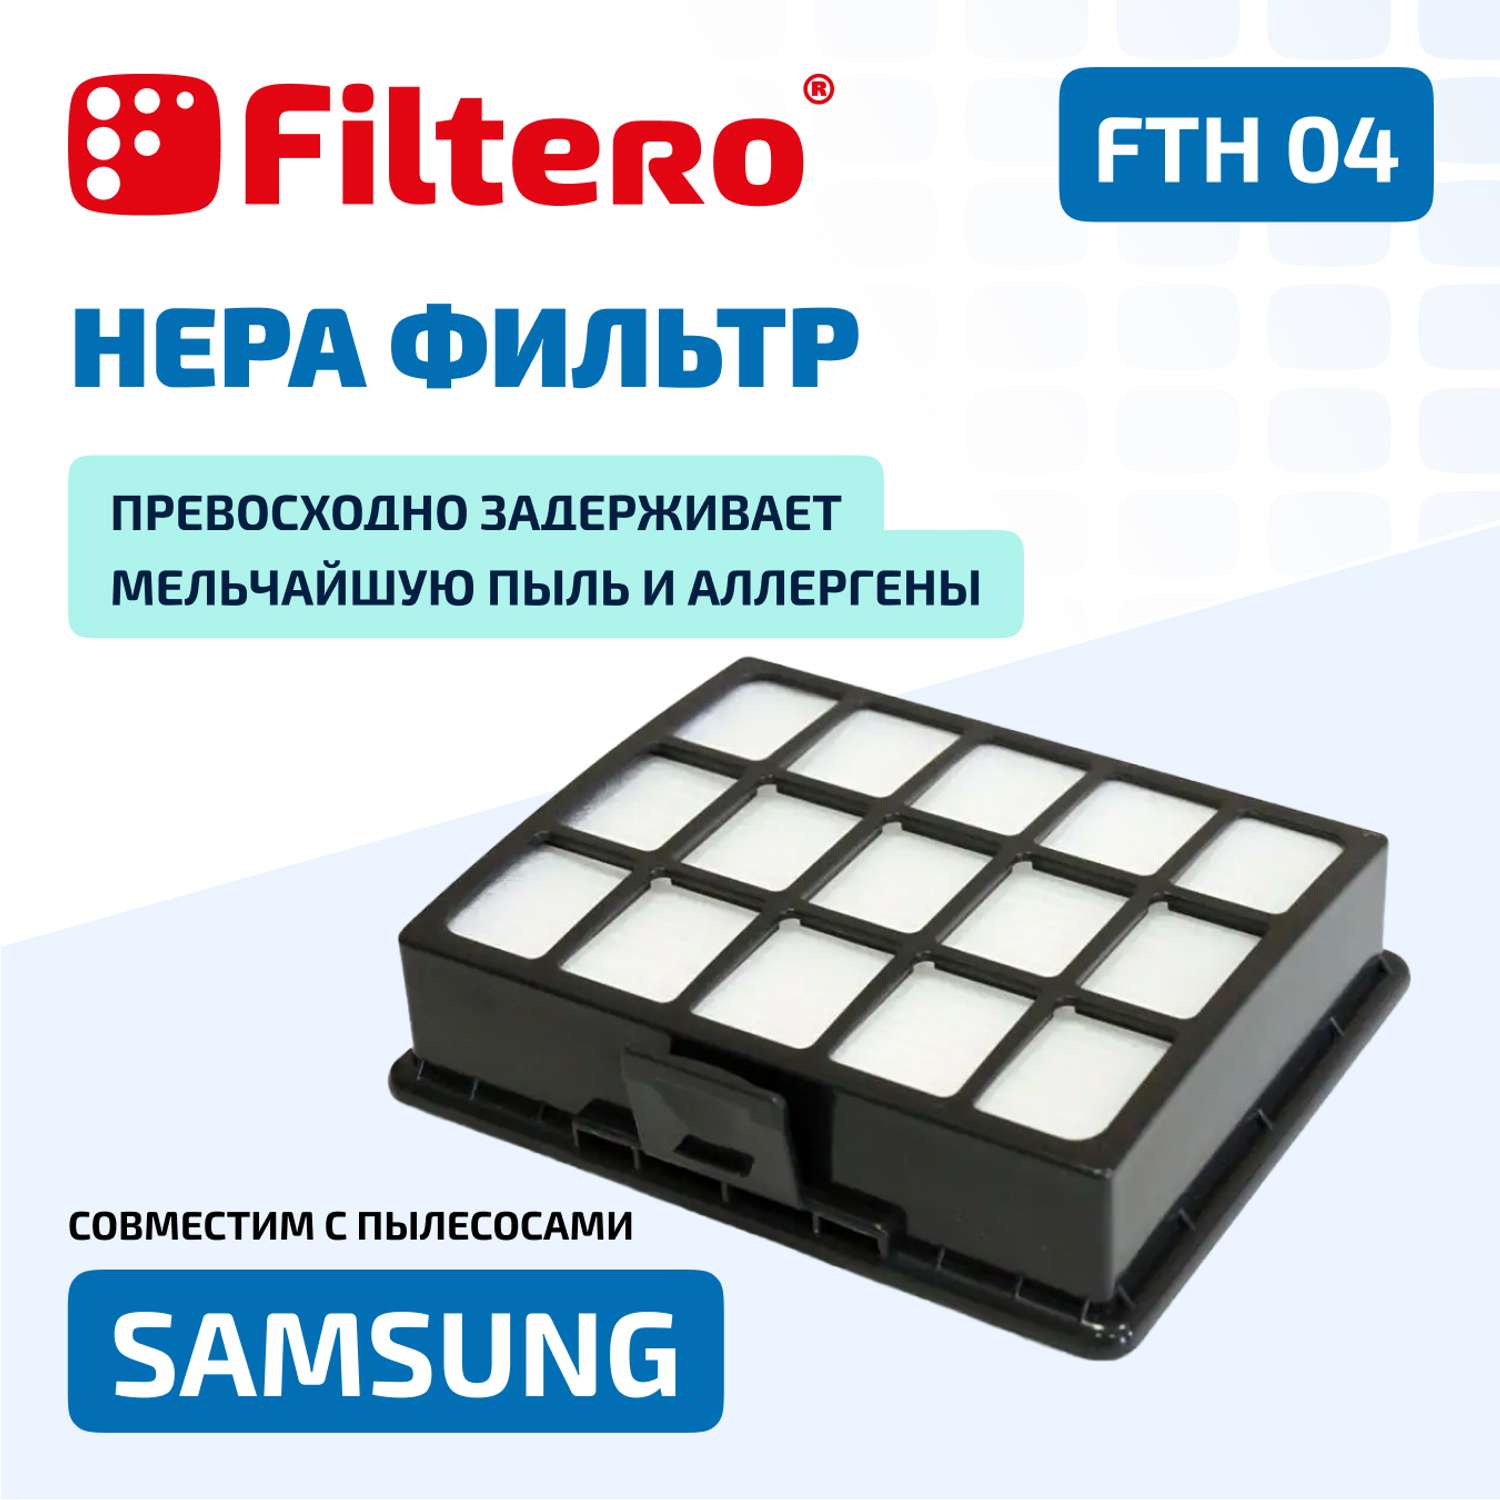 Фильтр HEPA Filtero FTH 04 Sam для пылесосов Samsung - фото 2